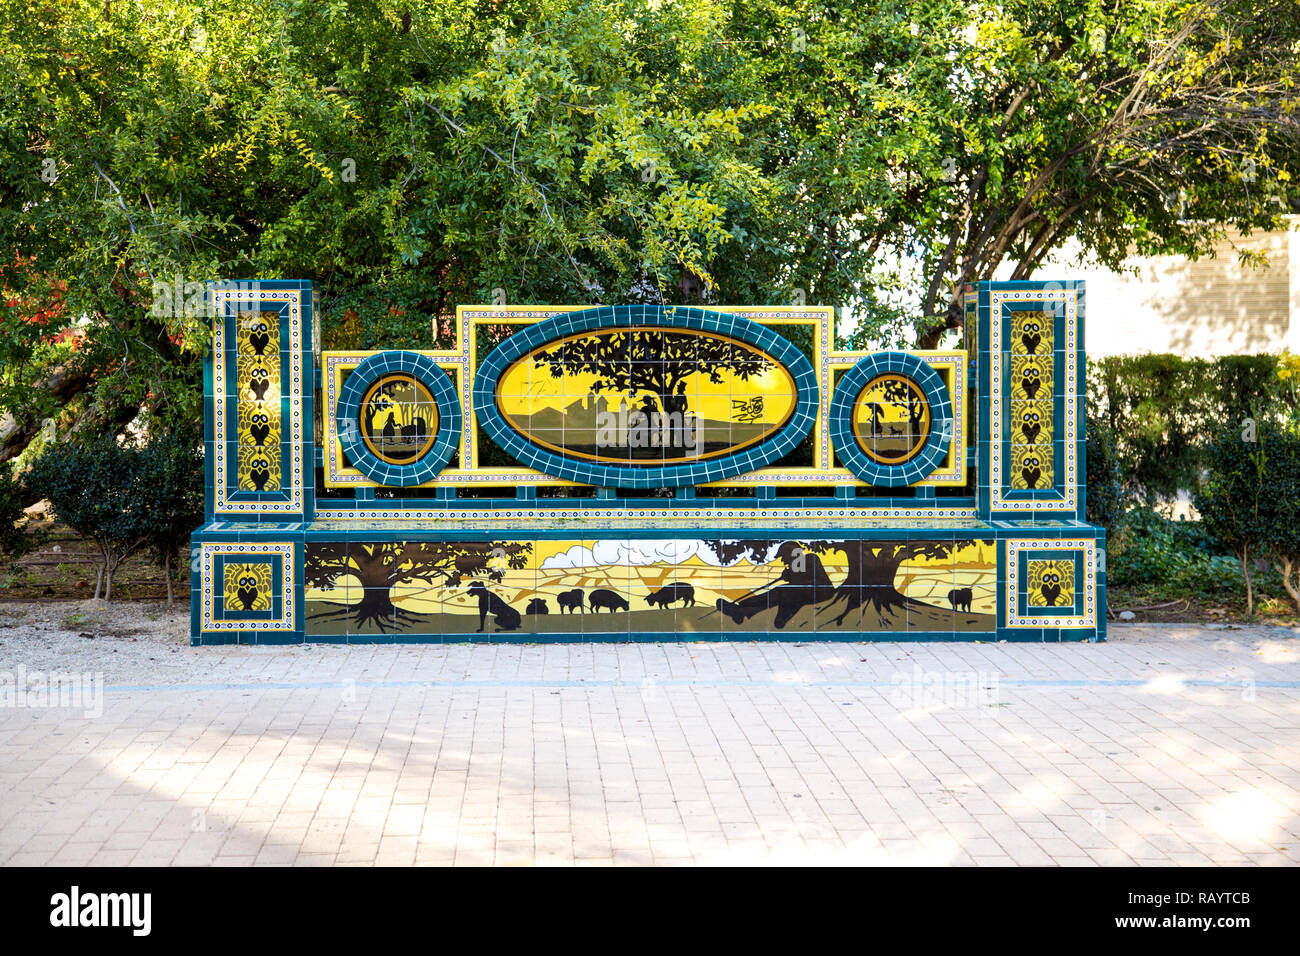 Ornate, tiled bench in Ribalta Park in Castellon de la Plana, Spain Stock Photo